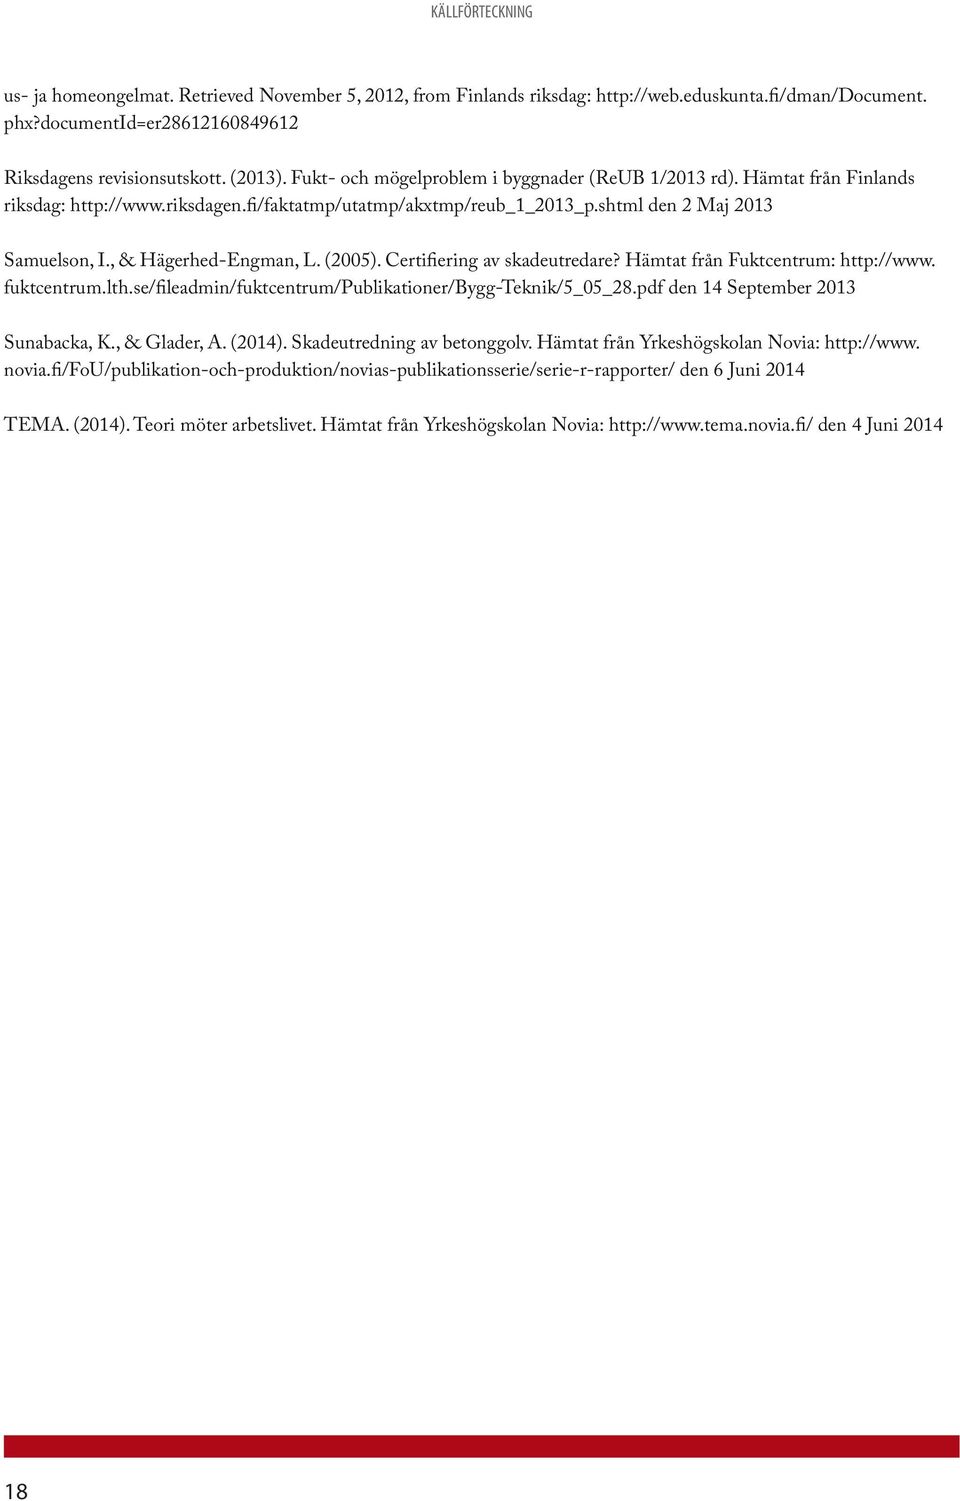 , & Hägerhed-Engman, L. (2005). Certifiering av skadeutredare? Hämtat från Fuktcentrum: http://www. fuktcentrum.lth.se/fileadmin/fuktcentrum/publikationer/bygg-teknik/5_05_28.